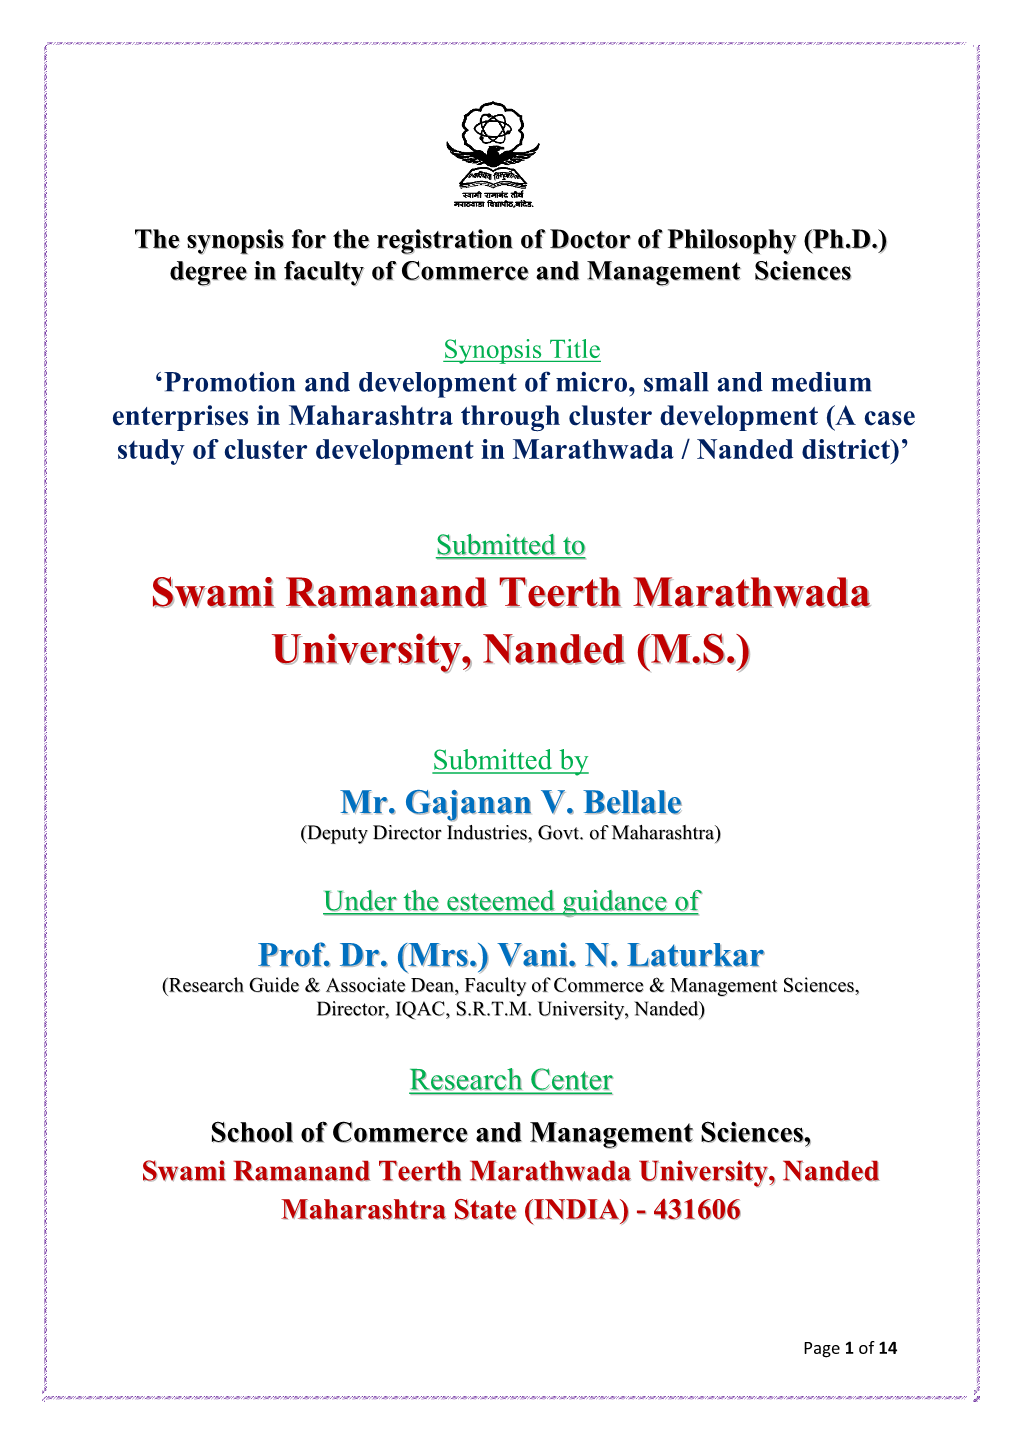 Swami Ramanand Teerth Marathwada University, Nanded Maharashtra State (INDIA) - 431606